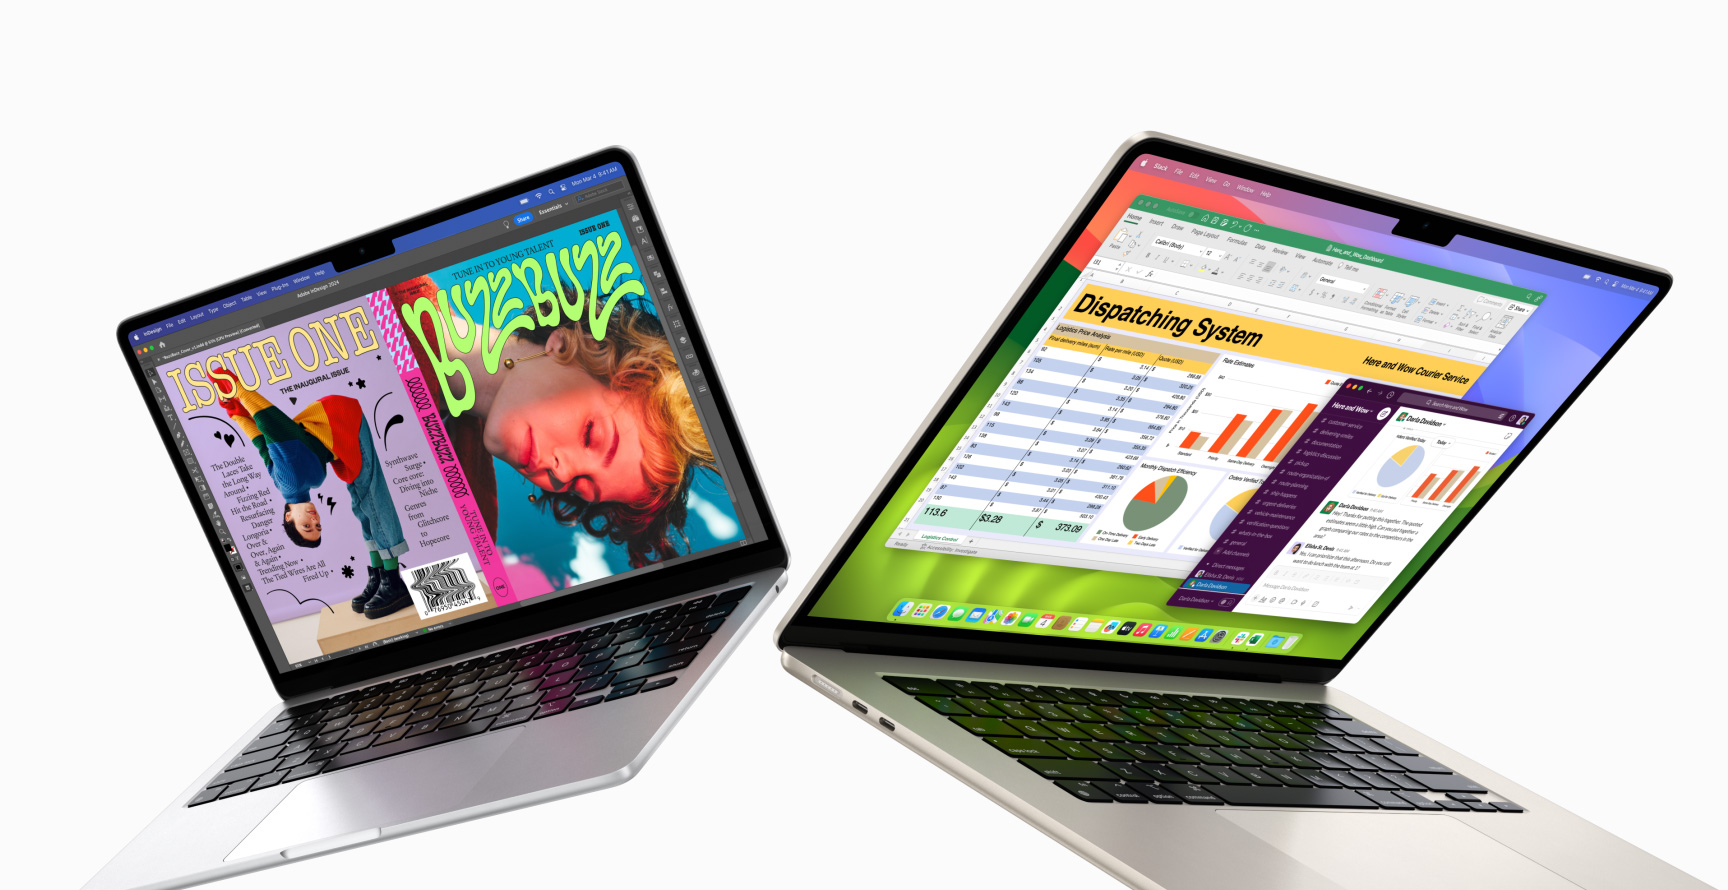 Pavērts 13 collu MacBook Air kreisajā pusē un 15 collu MacBook Air labajā pusē. 13 collu ekrānā redzams krāsains žurnāla vāks, kas izveidots InDesign aplikācijā. 15 collu ekrānā redzamas Microsoft Excel un Slack aplikācijas.